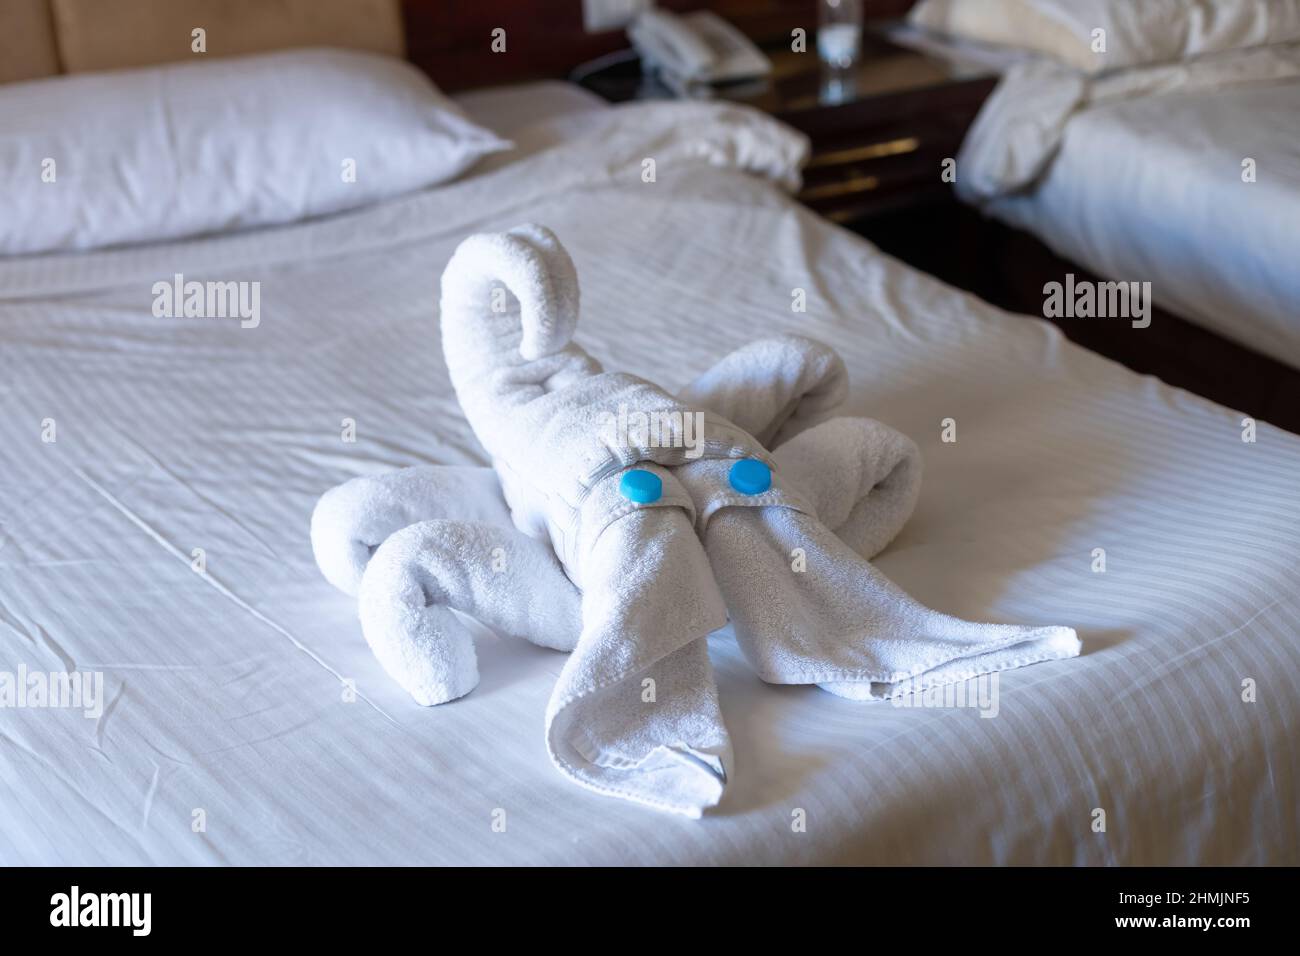 Skorpion-Figur aus Handtüchern auf einem Bett in einem Hotelzimmer  Stockfotografie - Alamy